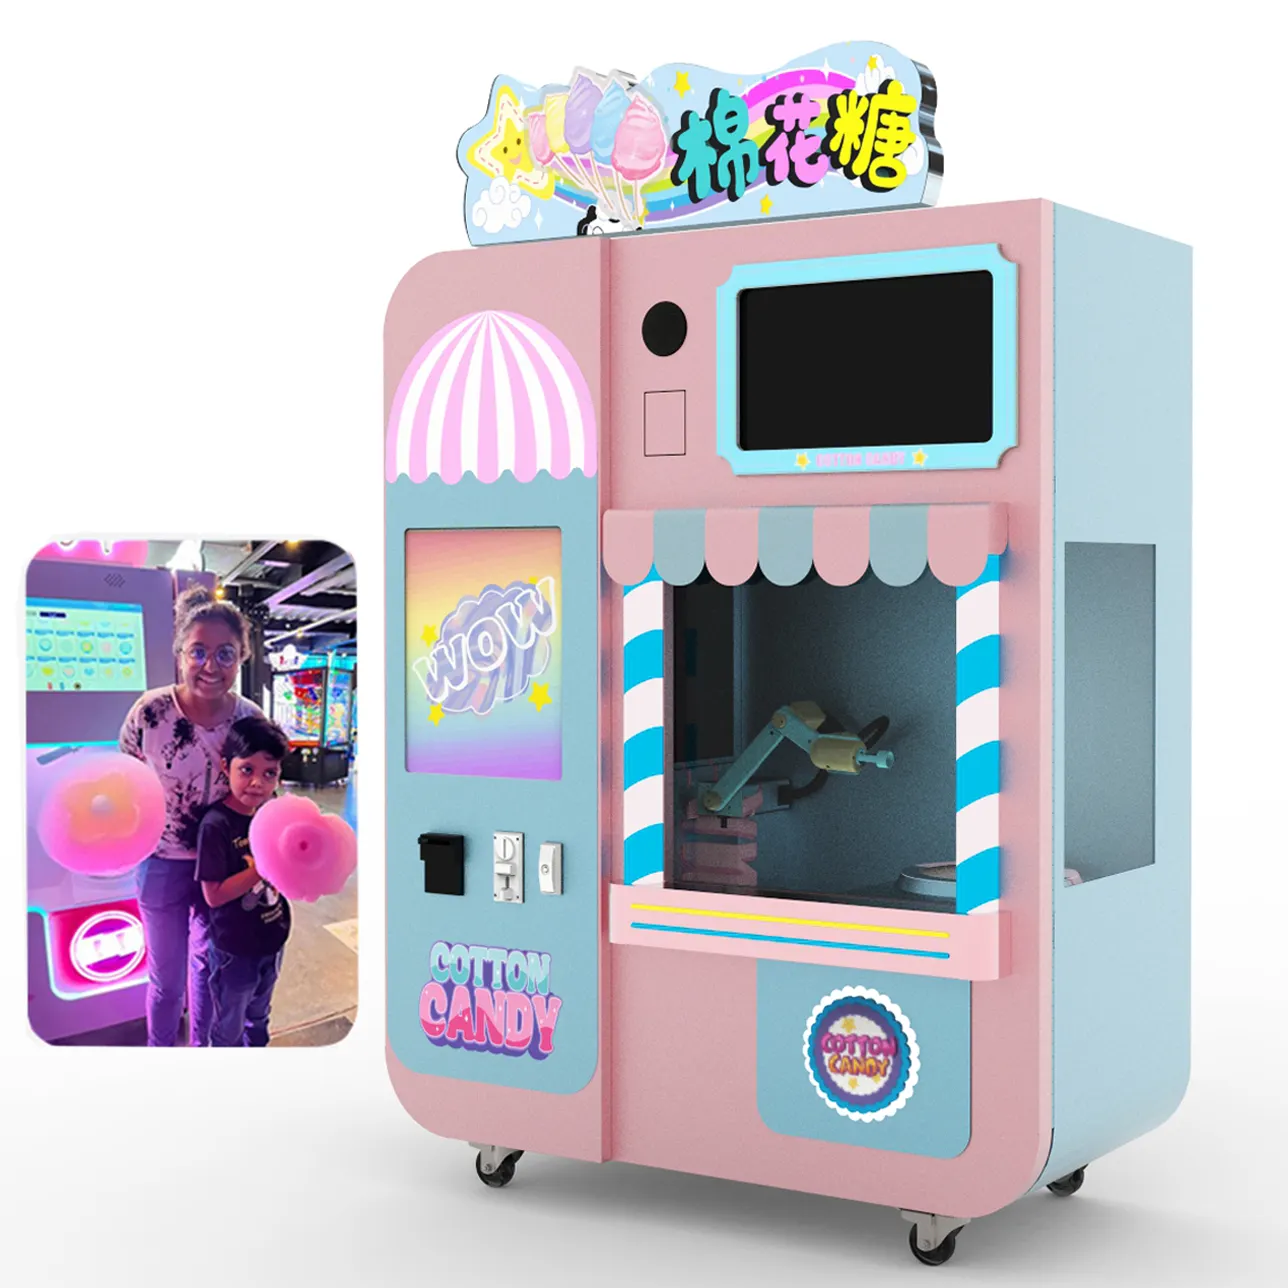 새로운 셀프 서빙 달콤한 설탕 구름 솜사탕 메이커 자판기 일본 꽃 솜사탕 자판기 만들기